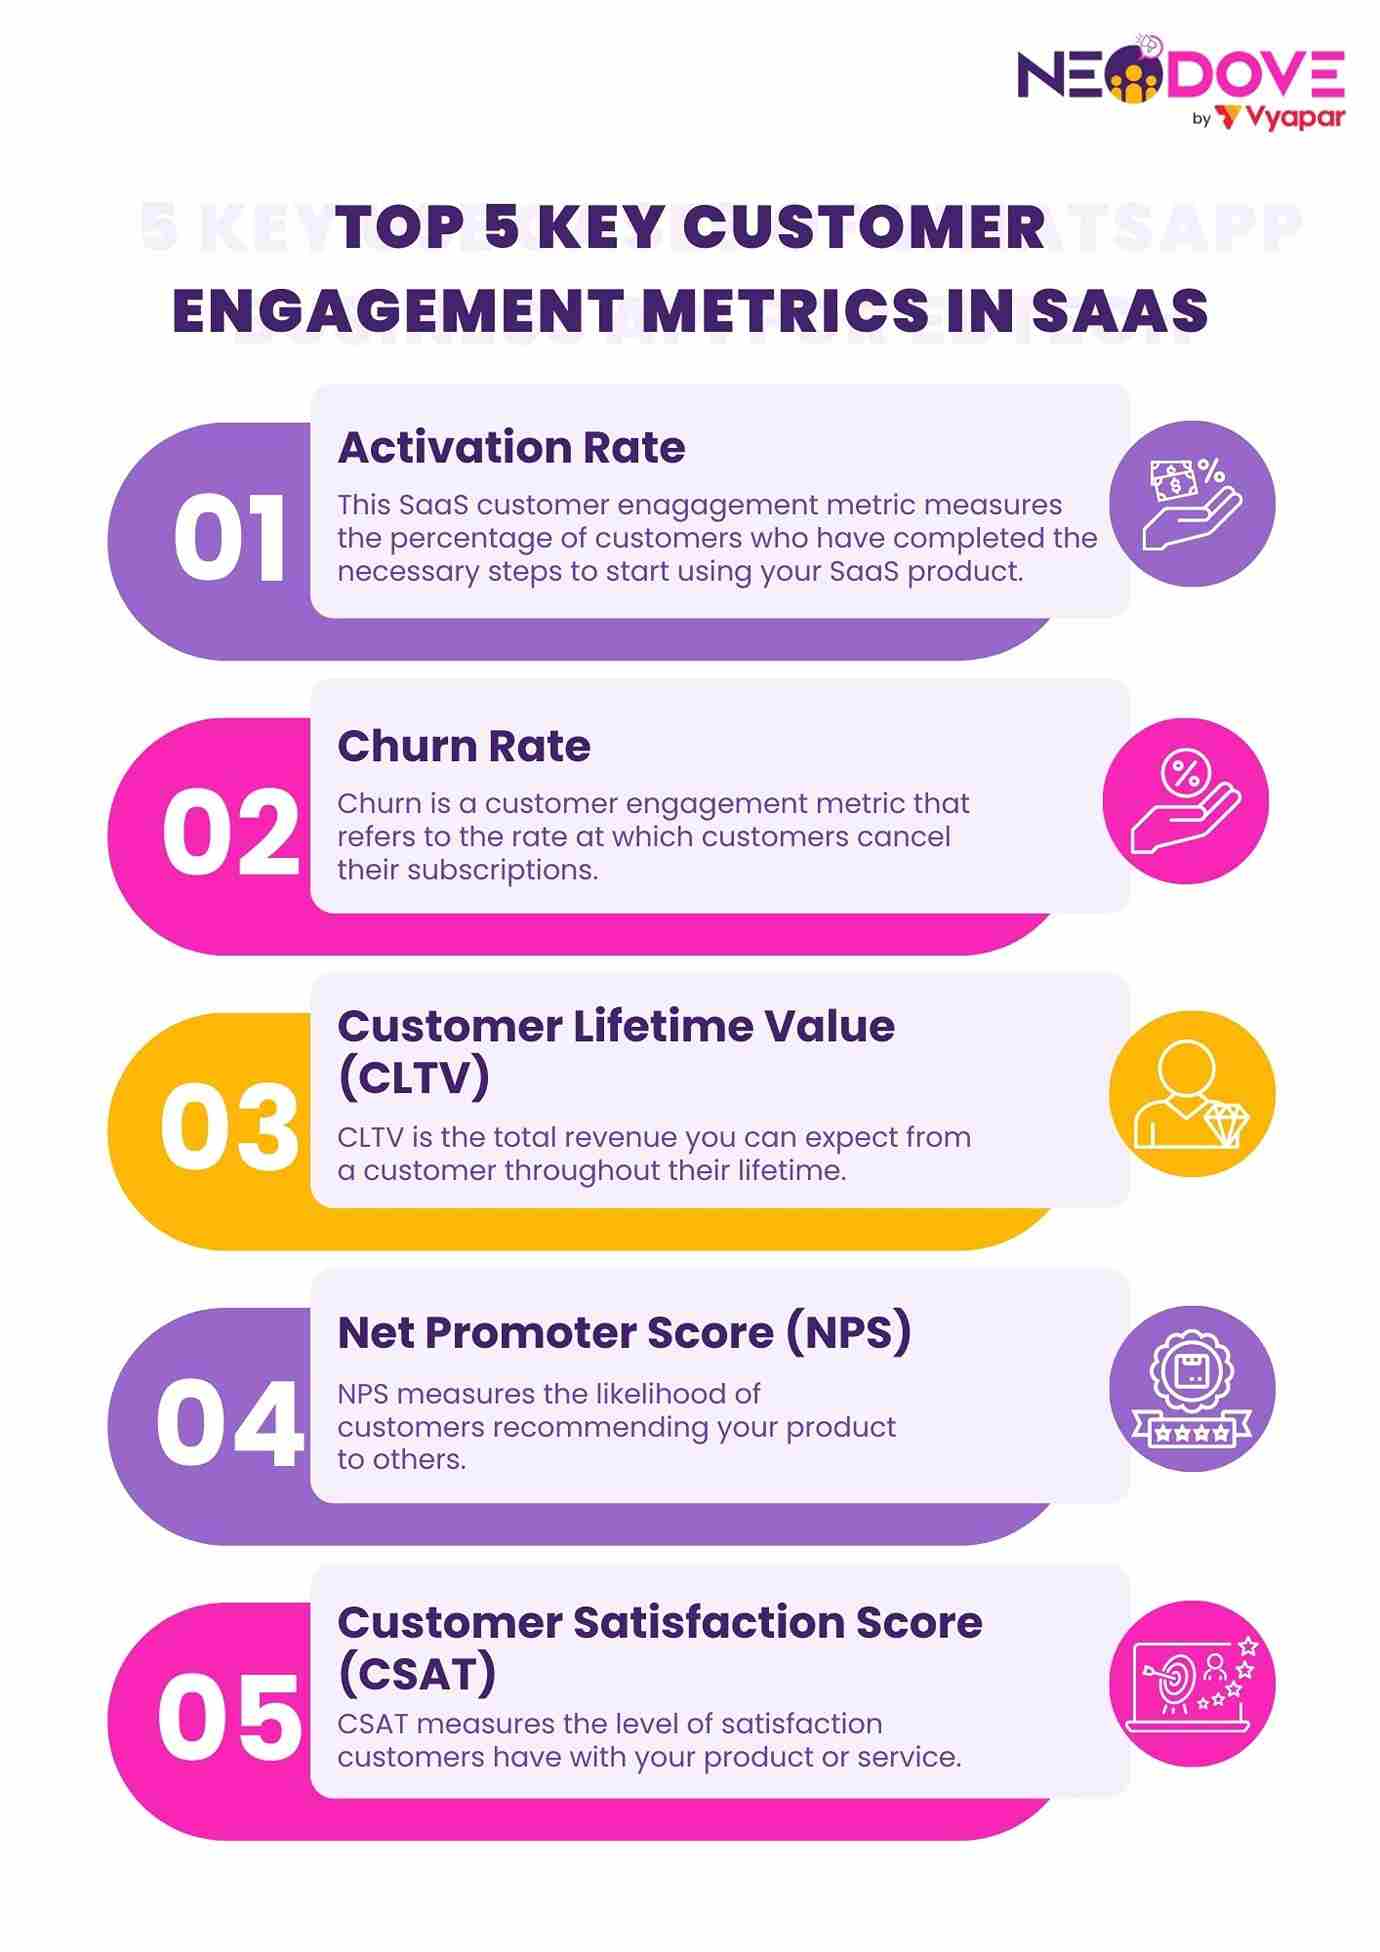 Top 5 Key Customer Engagement Metrics in SaaS - NeoDove